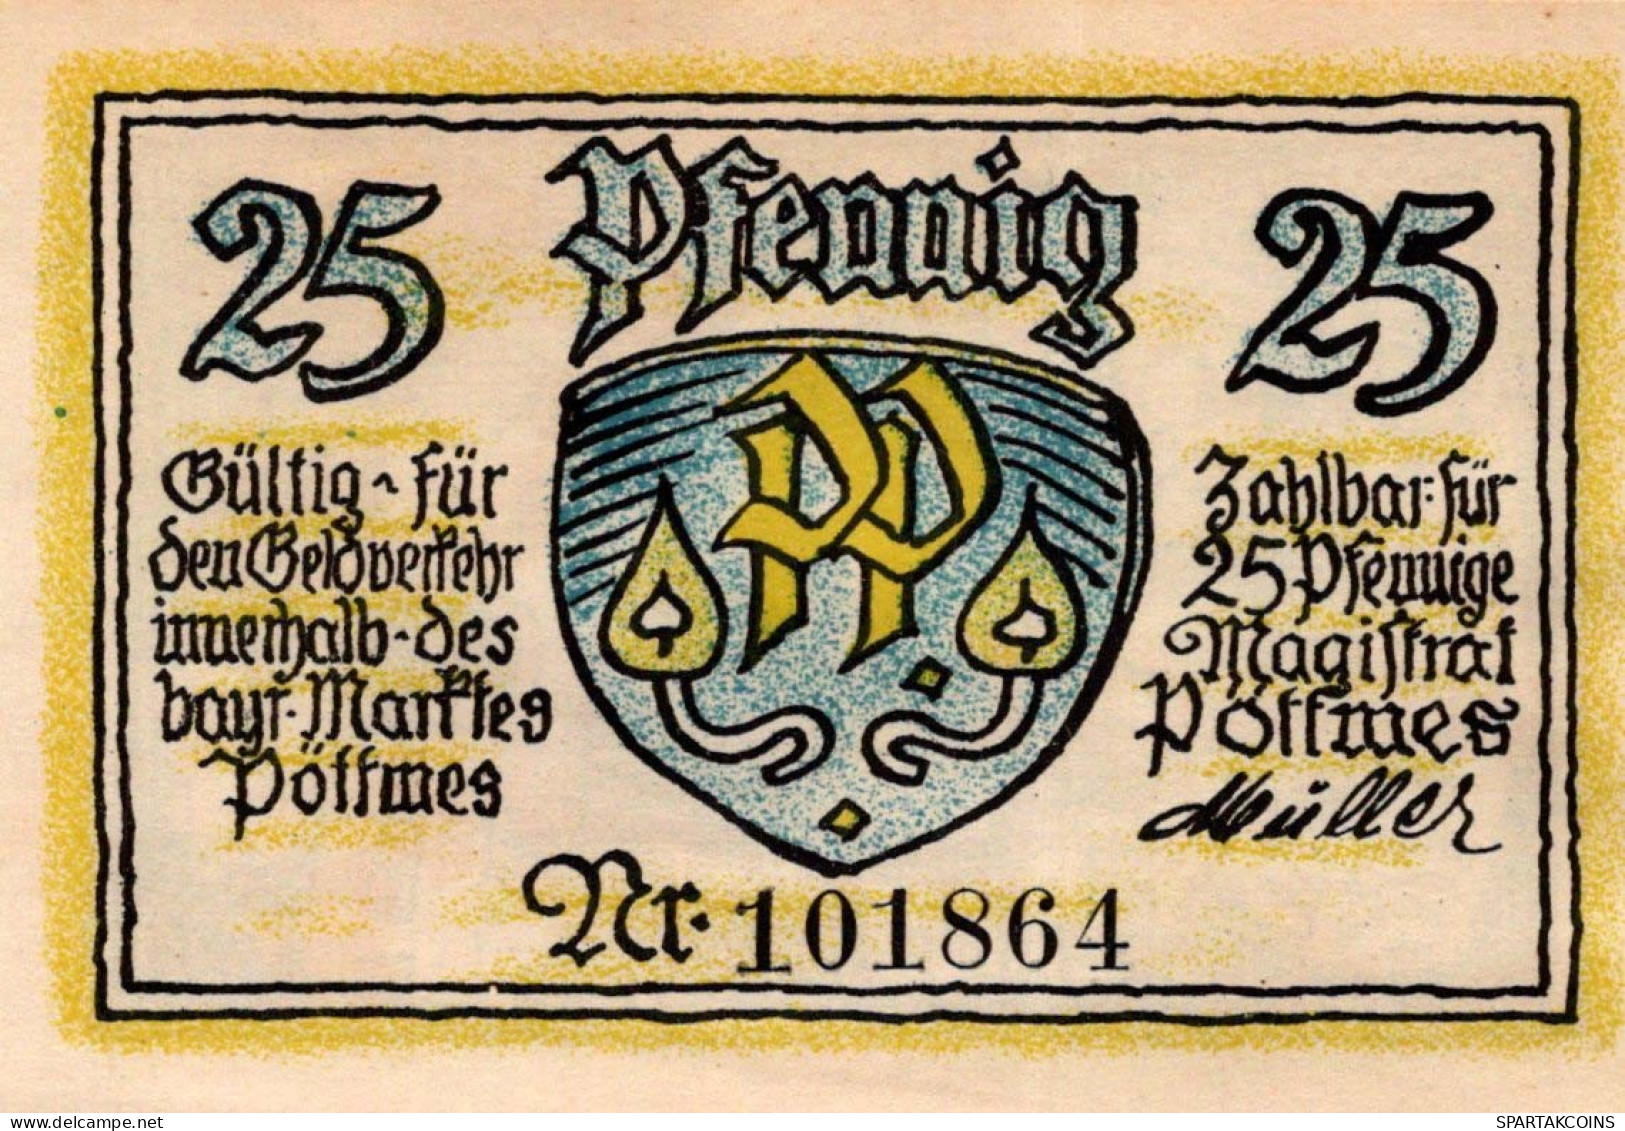 25 PFENNIG Stadt POTTMES Bavaria UNC DEUTSCHLAND Notgeld Banknote #PI900 - [11] Emissioni Locali